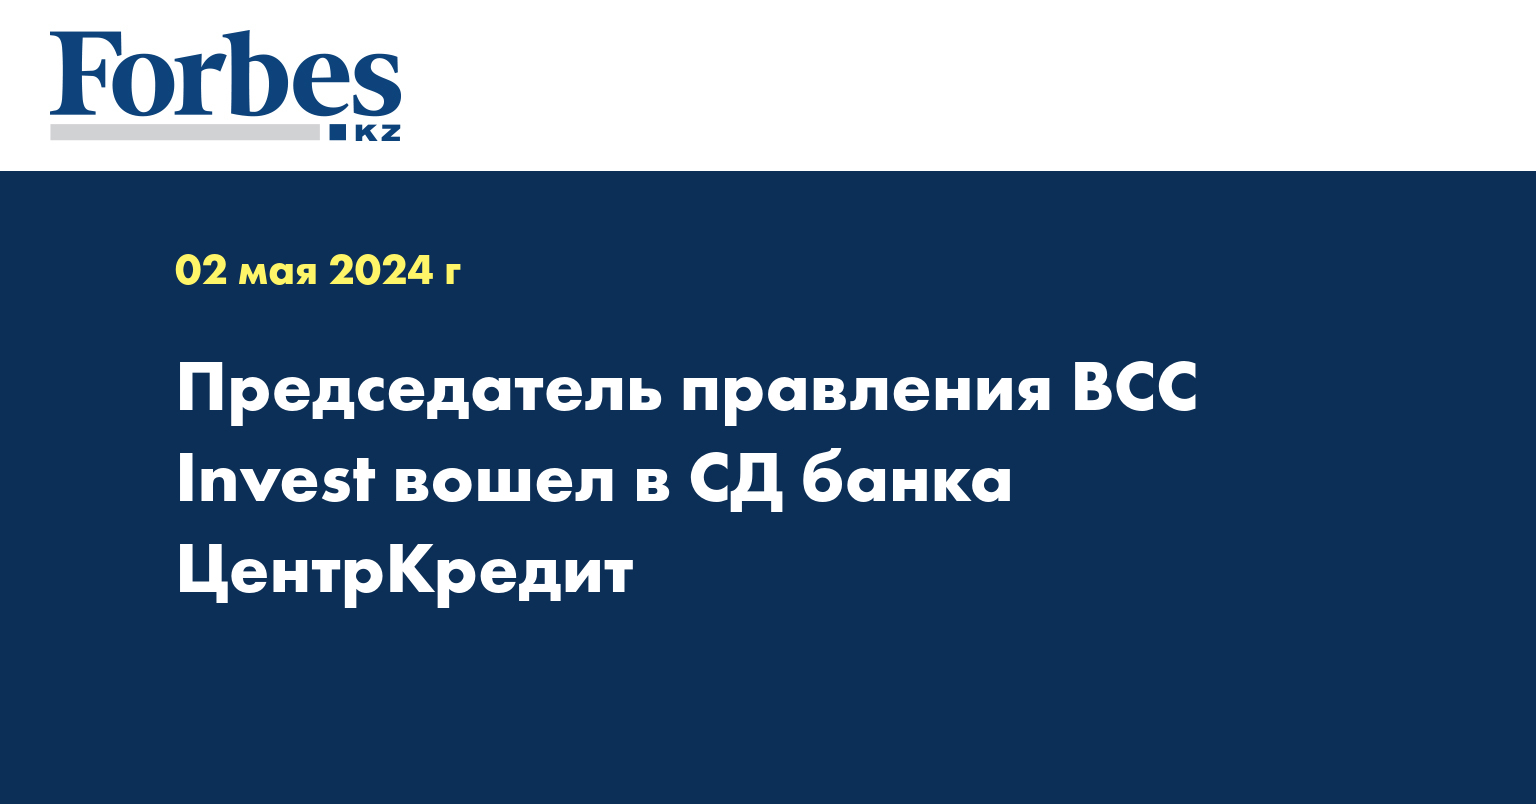 Председатель правления BCC Invest вошел в СД банка ЦентрКредит